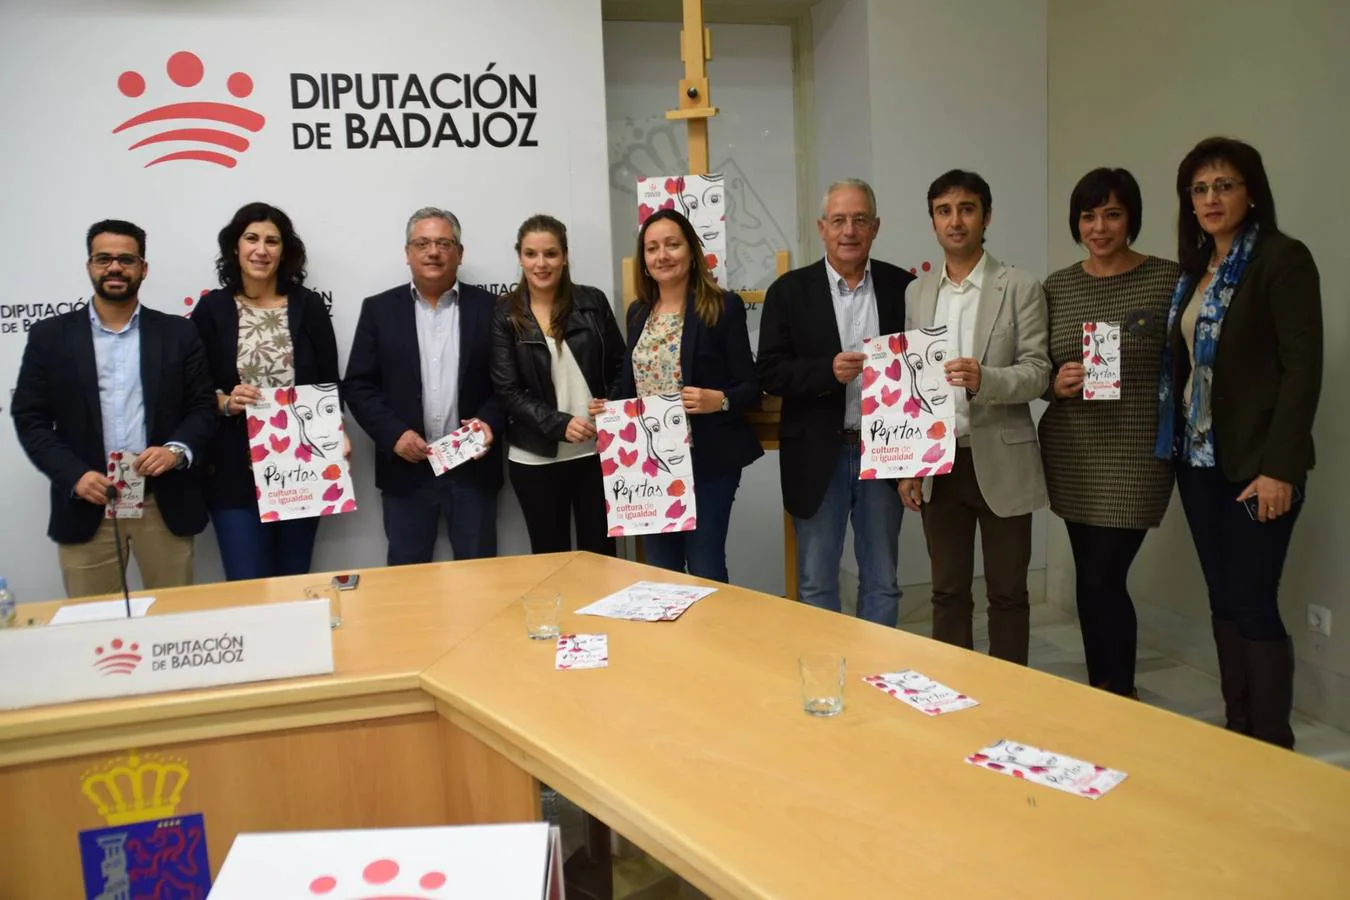 La Diputación de Badajoz impulsa por segundo año consecutivo el programa "Pepitas" en cinco municipios de la provincia